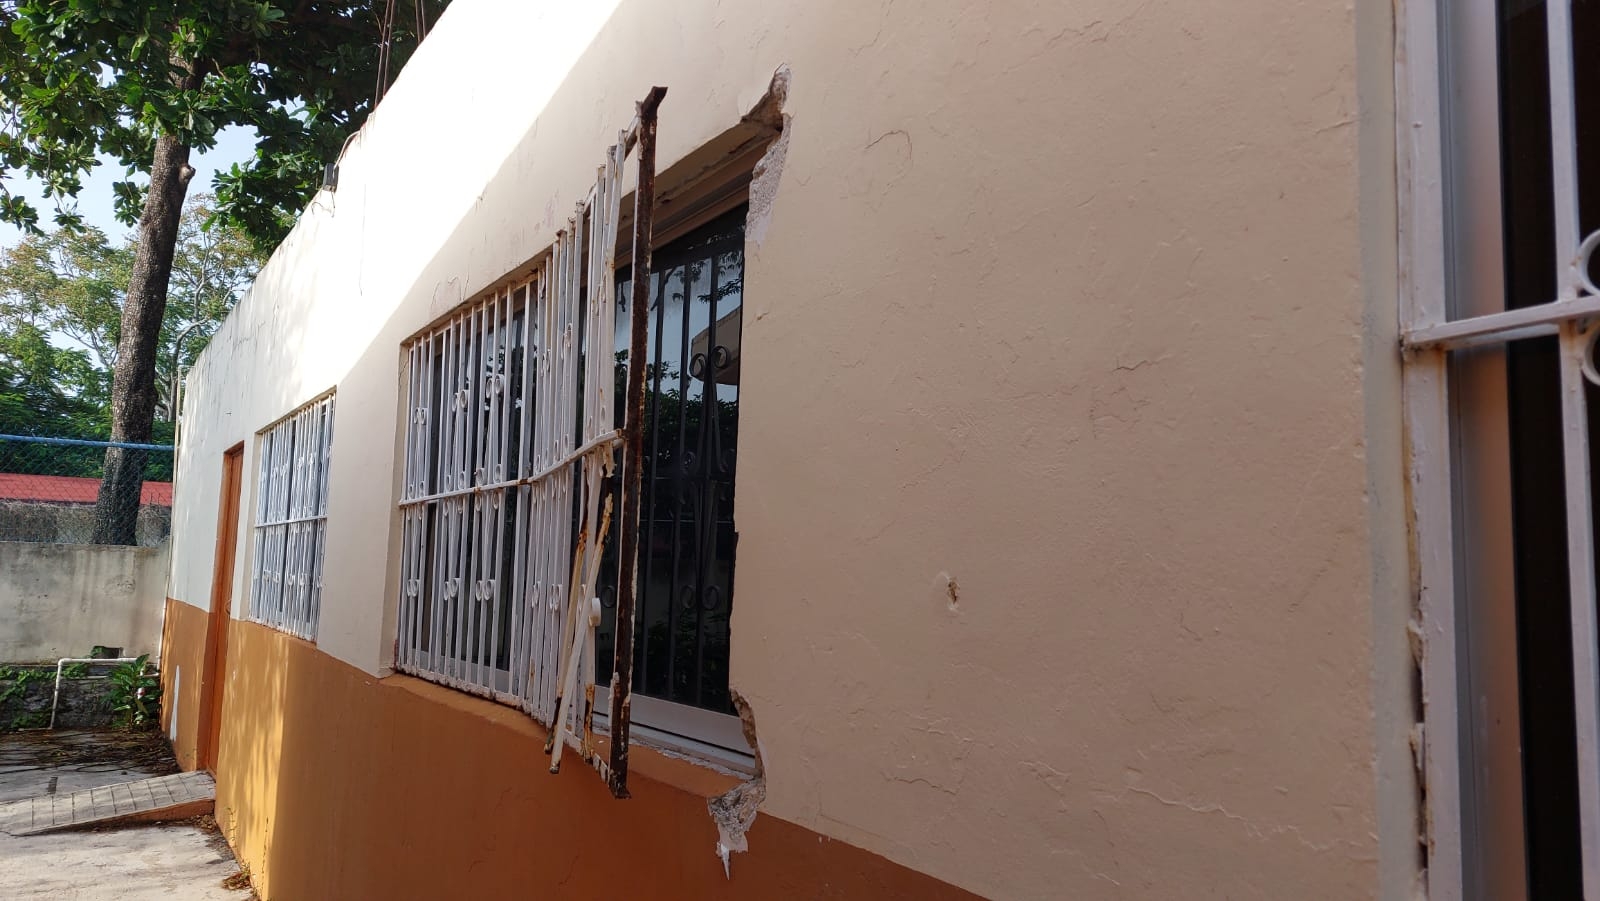 Ladrones obtienen hasta 20 mil pesos por transformadores robados en escuelas de Chetumal